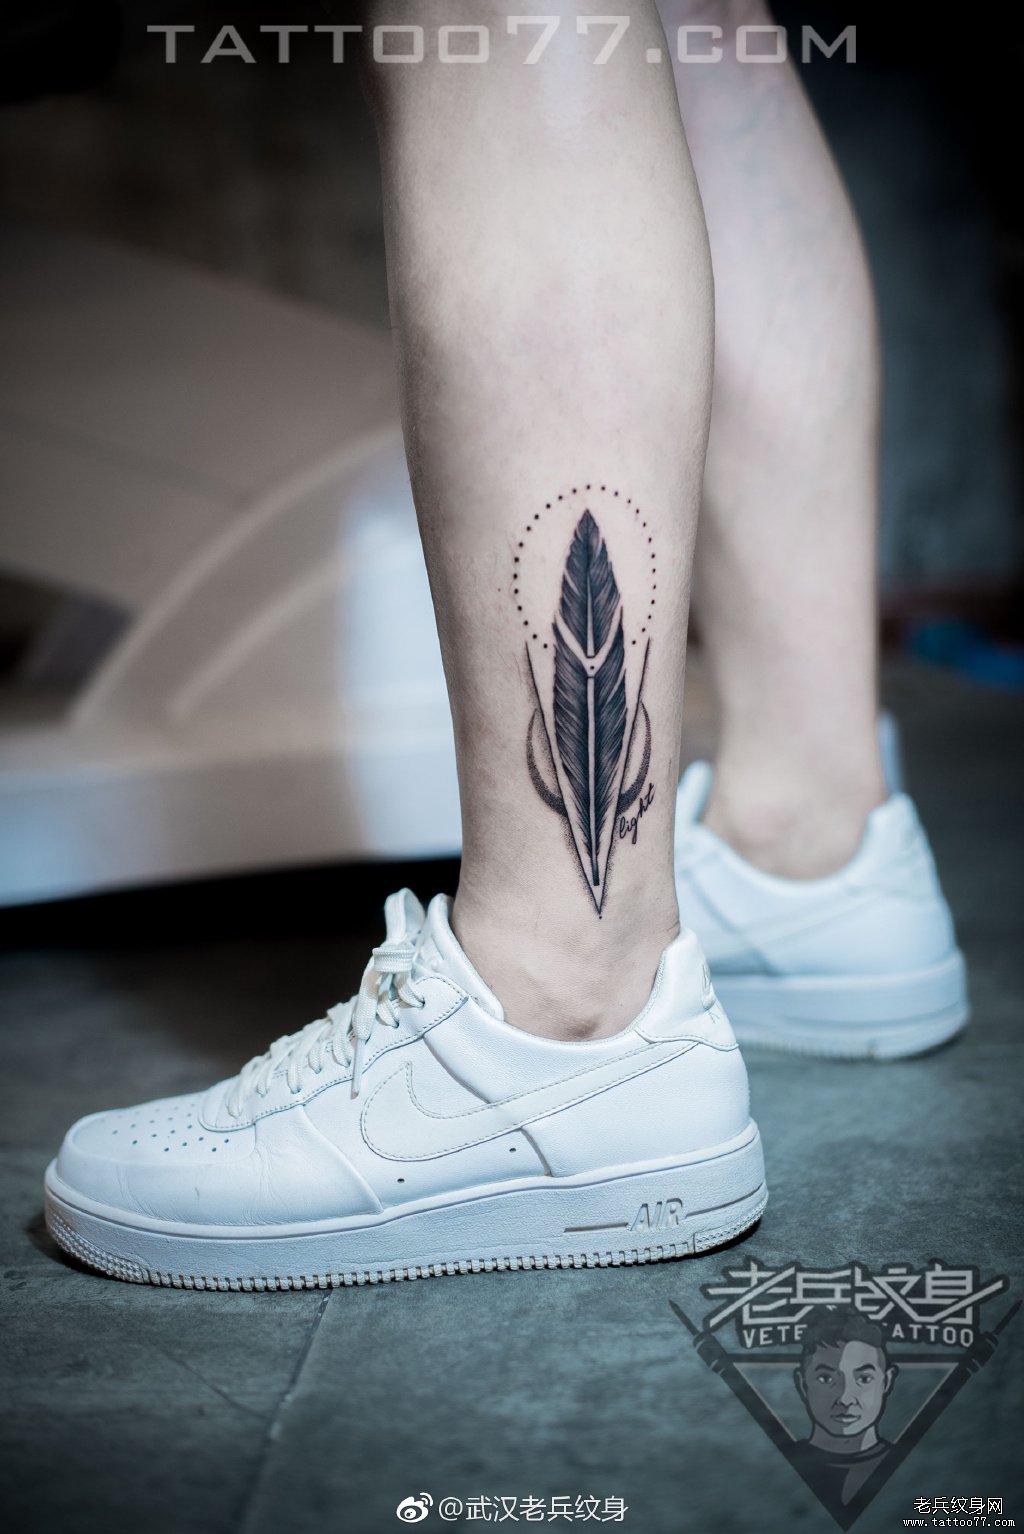 脚踝羽毛纹身图案作品由武汉纹身店打造